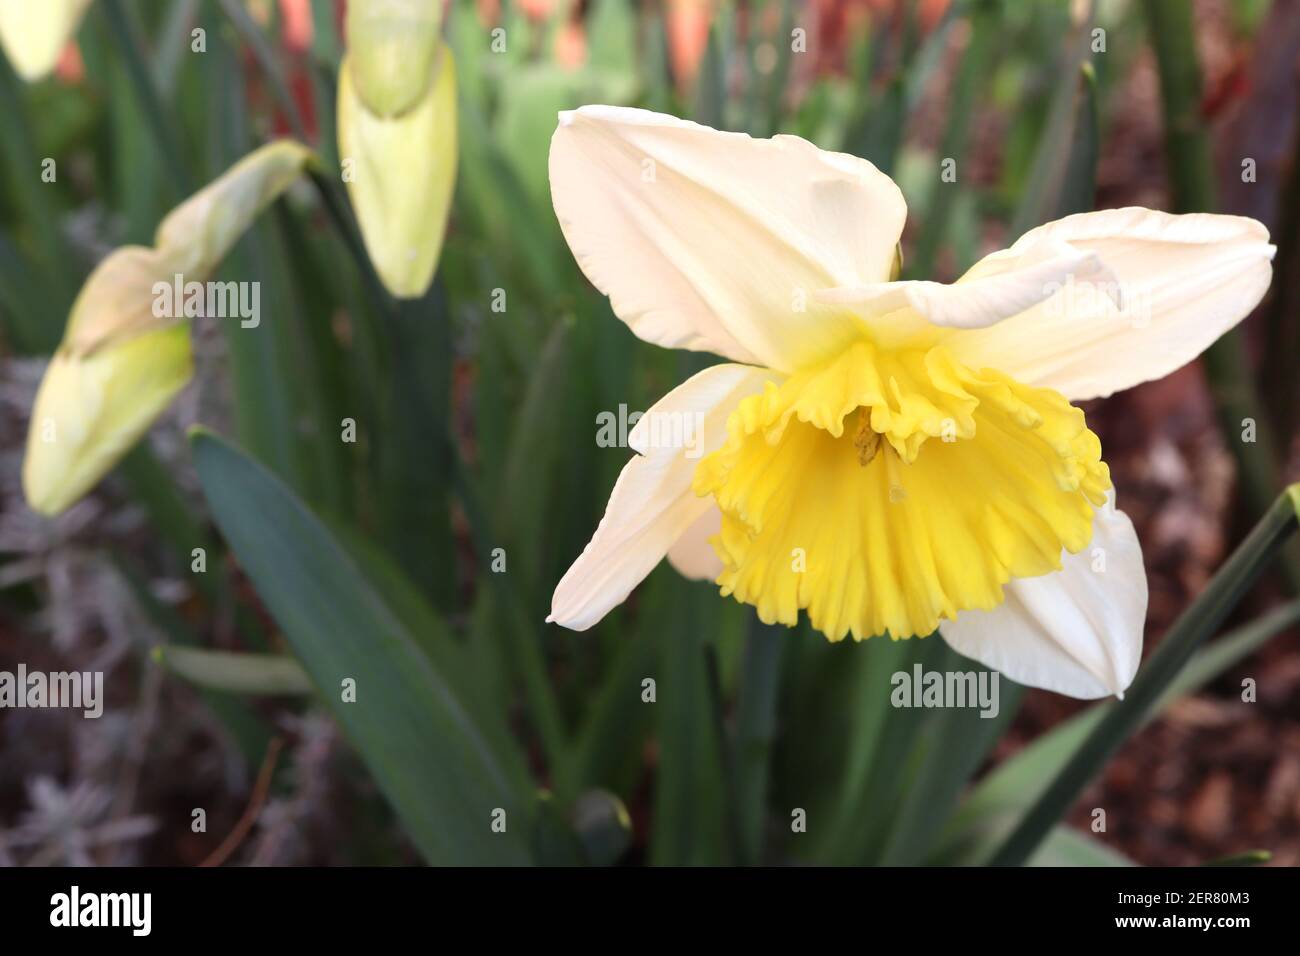 Narcissus ‘Ice Follies’ Division 2 großschalige Narzissen-Narzissen mit zitronengelben Blütenblättern und goldgelber Trompete, Februar, England, Großbritannien Stockfoto